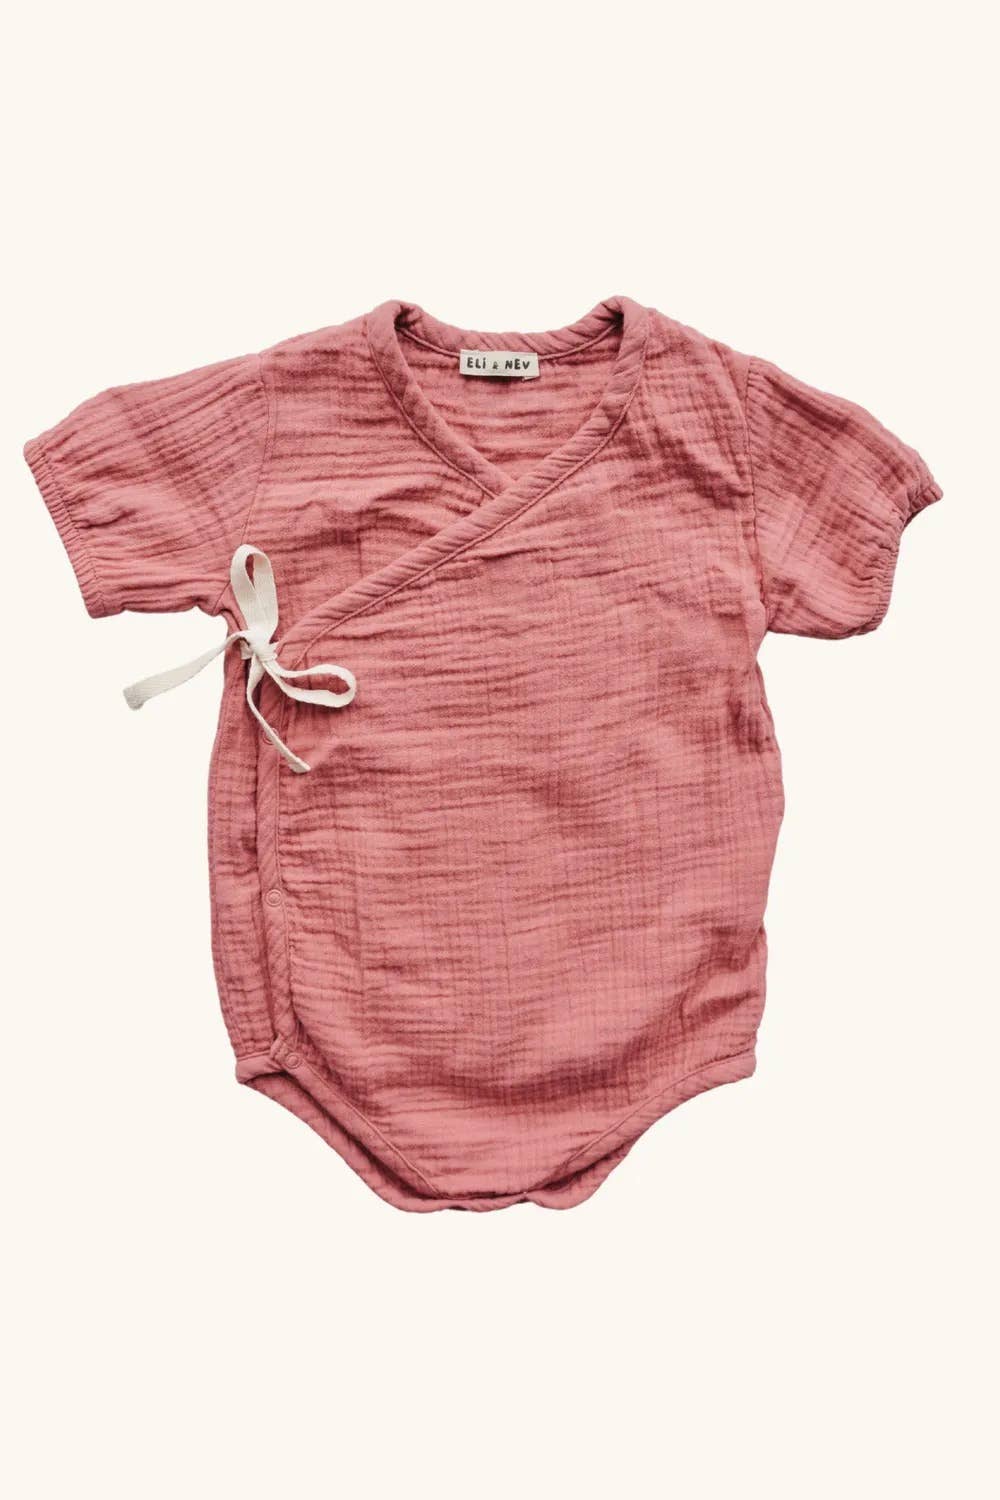 Muslin baby onesie - pink